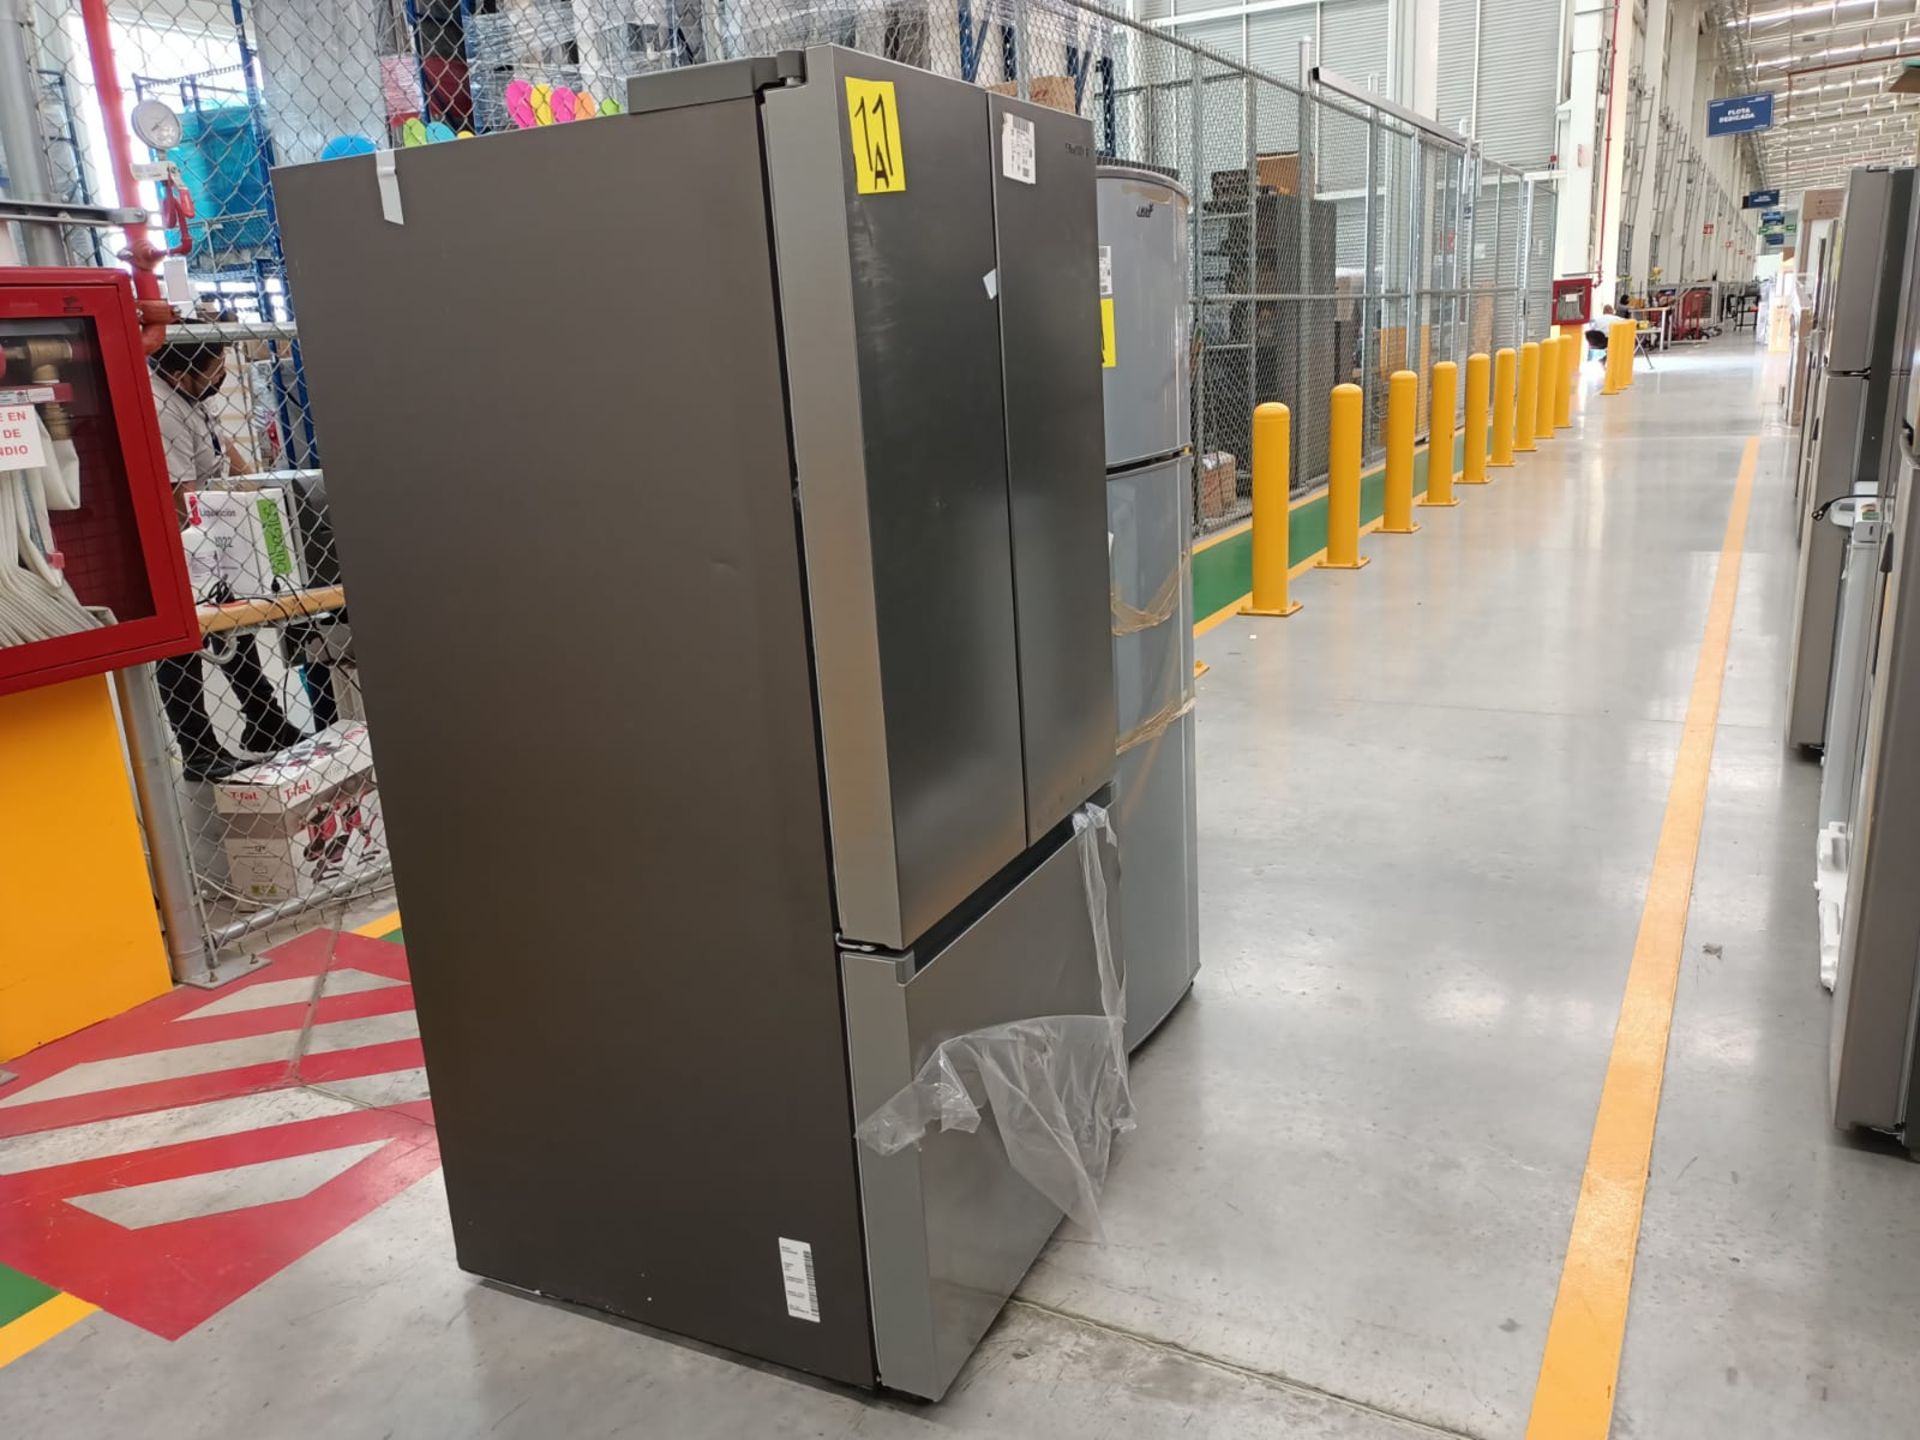 Lote de 2 refrigeradores incluye: 1 refrigerador marca Samsung, modelo RF22A4010S9/EM - Image 9 of 51